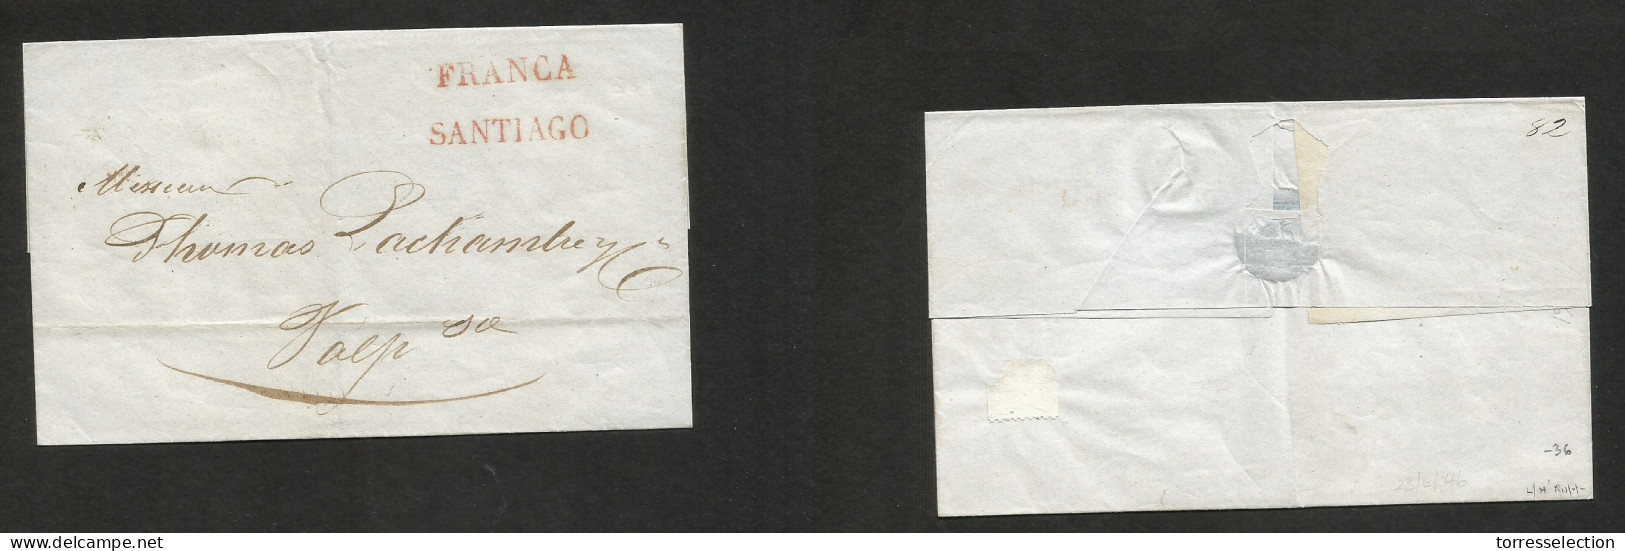 CHILE. 1846 (29 June) Stgo - Valp. E. Stline "FRANCIA" + "SANTIAGO" VF Item Condition. SALE. - Cile